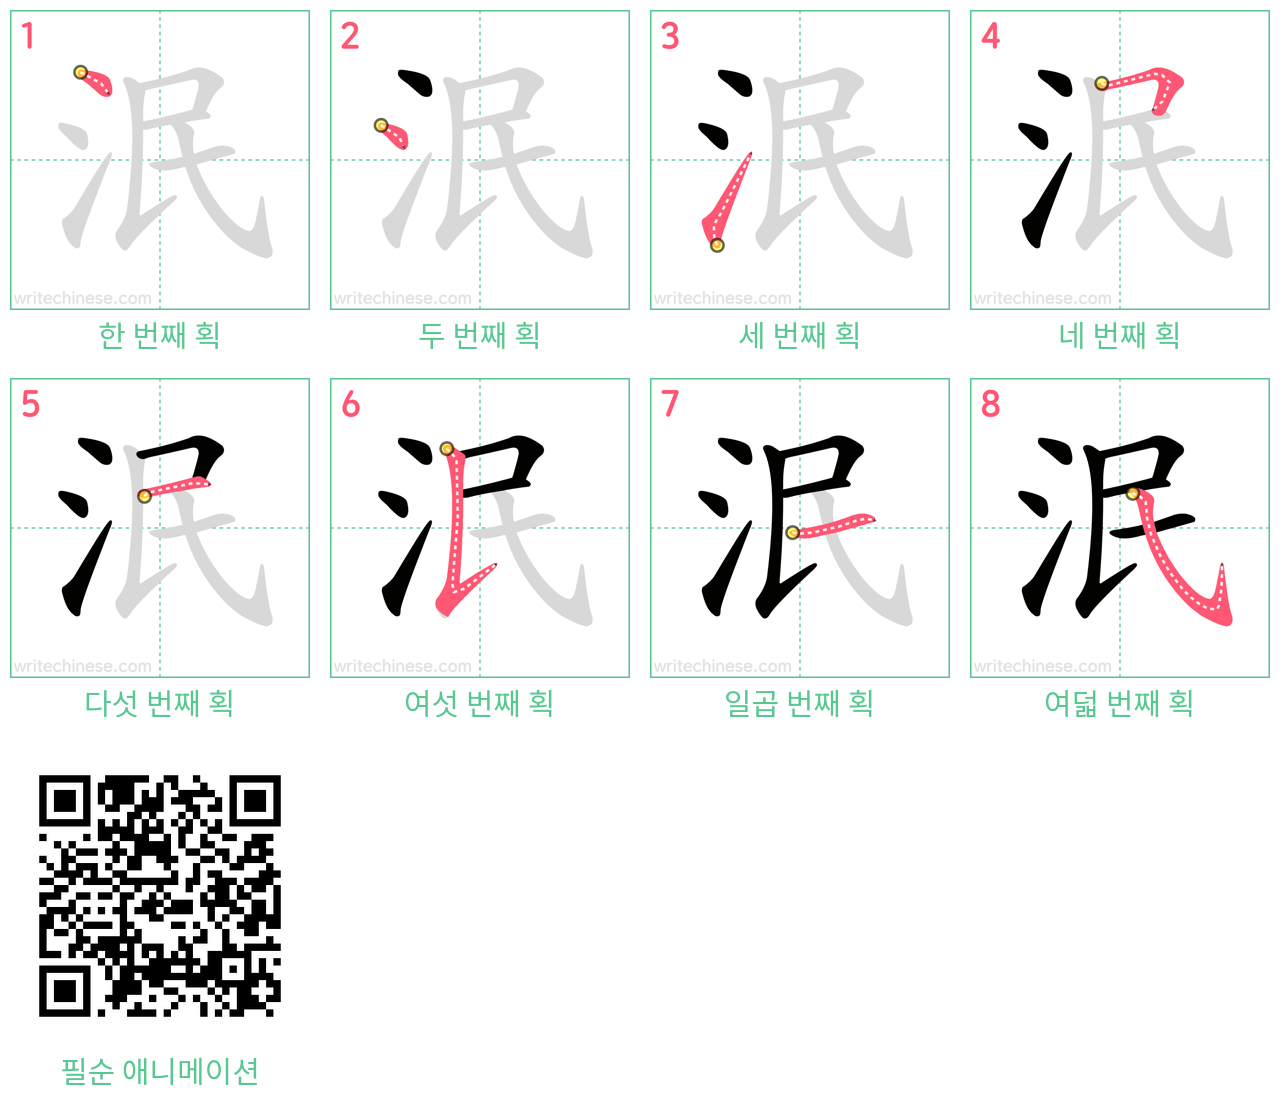 泯 step-by-step stroke order diagrams